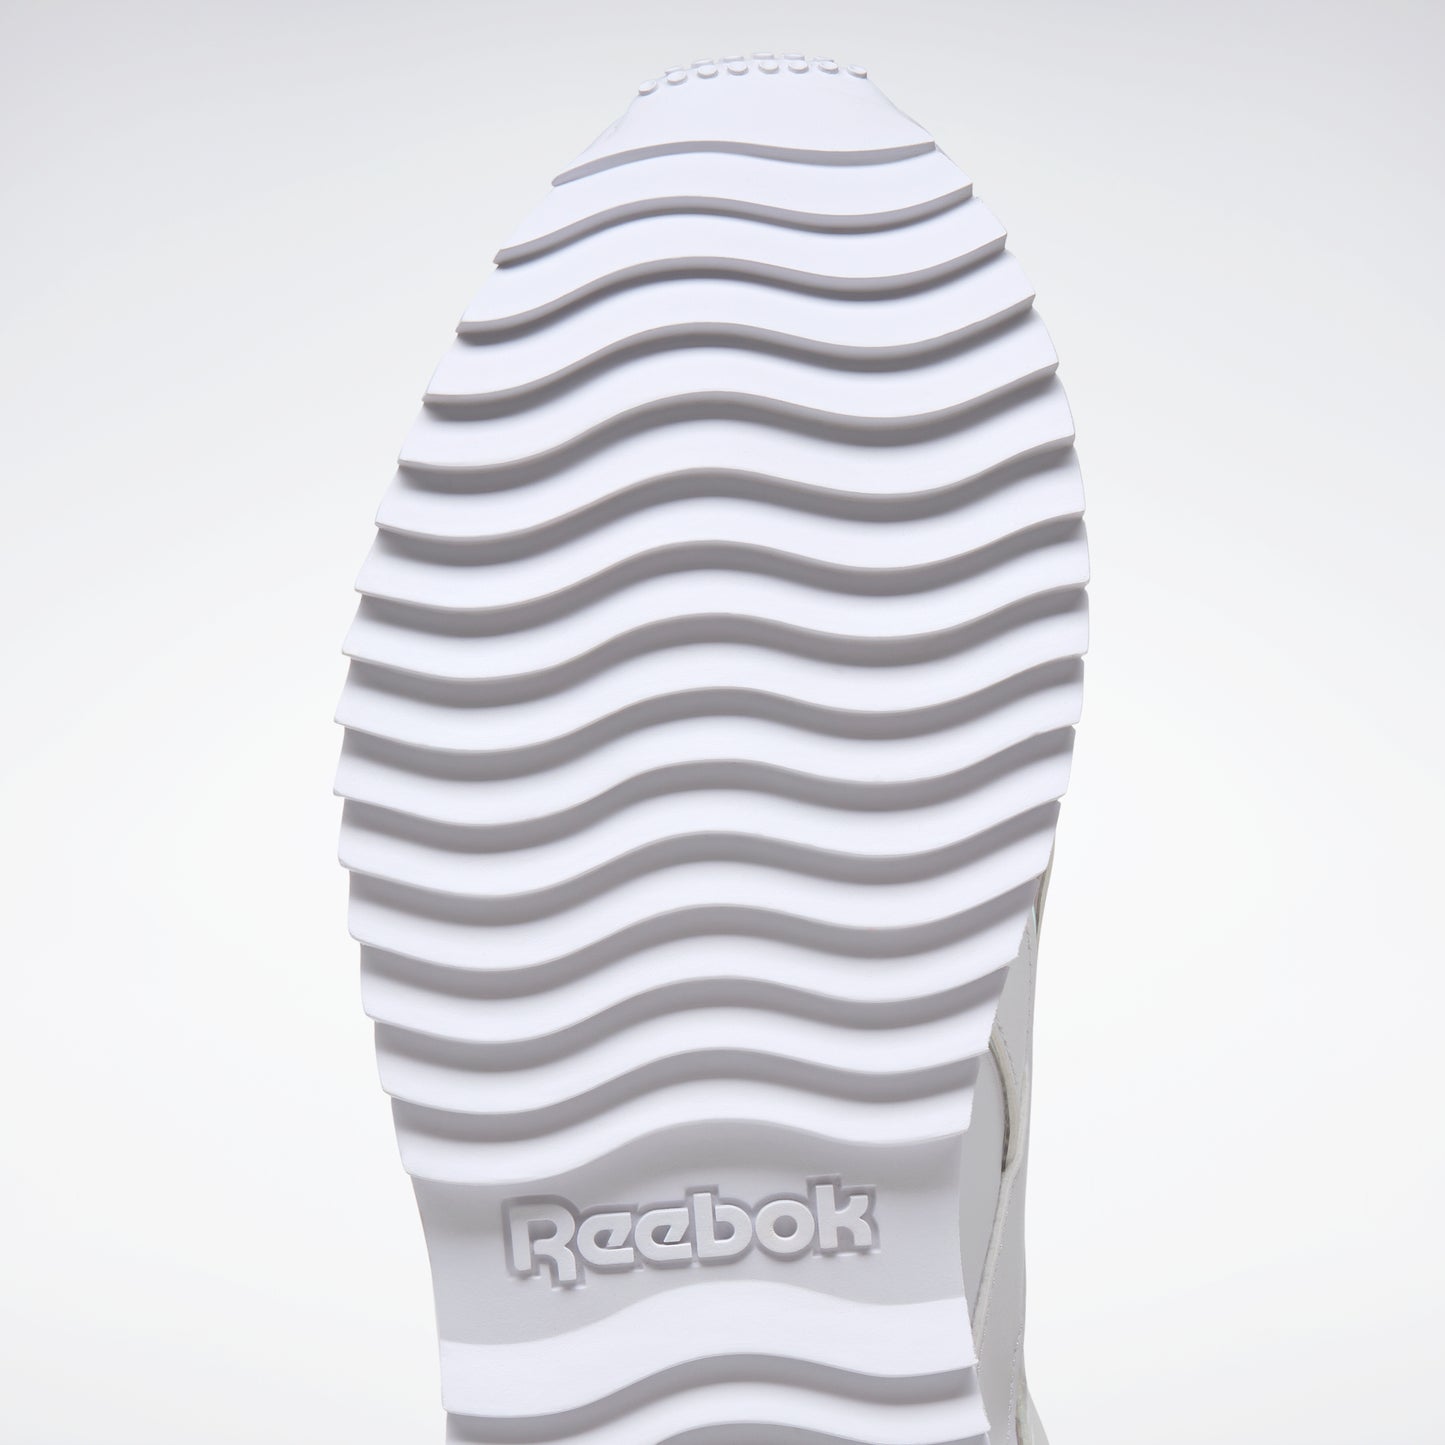 Reebok Footwear Women Reebok Royal Glide Ripple Double Shoes White/White/White